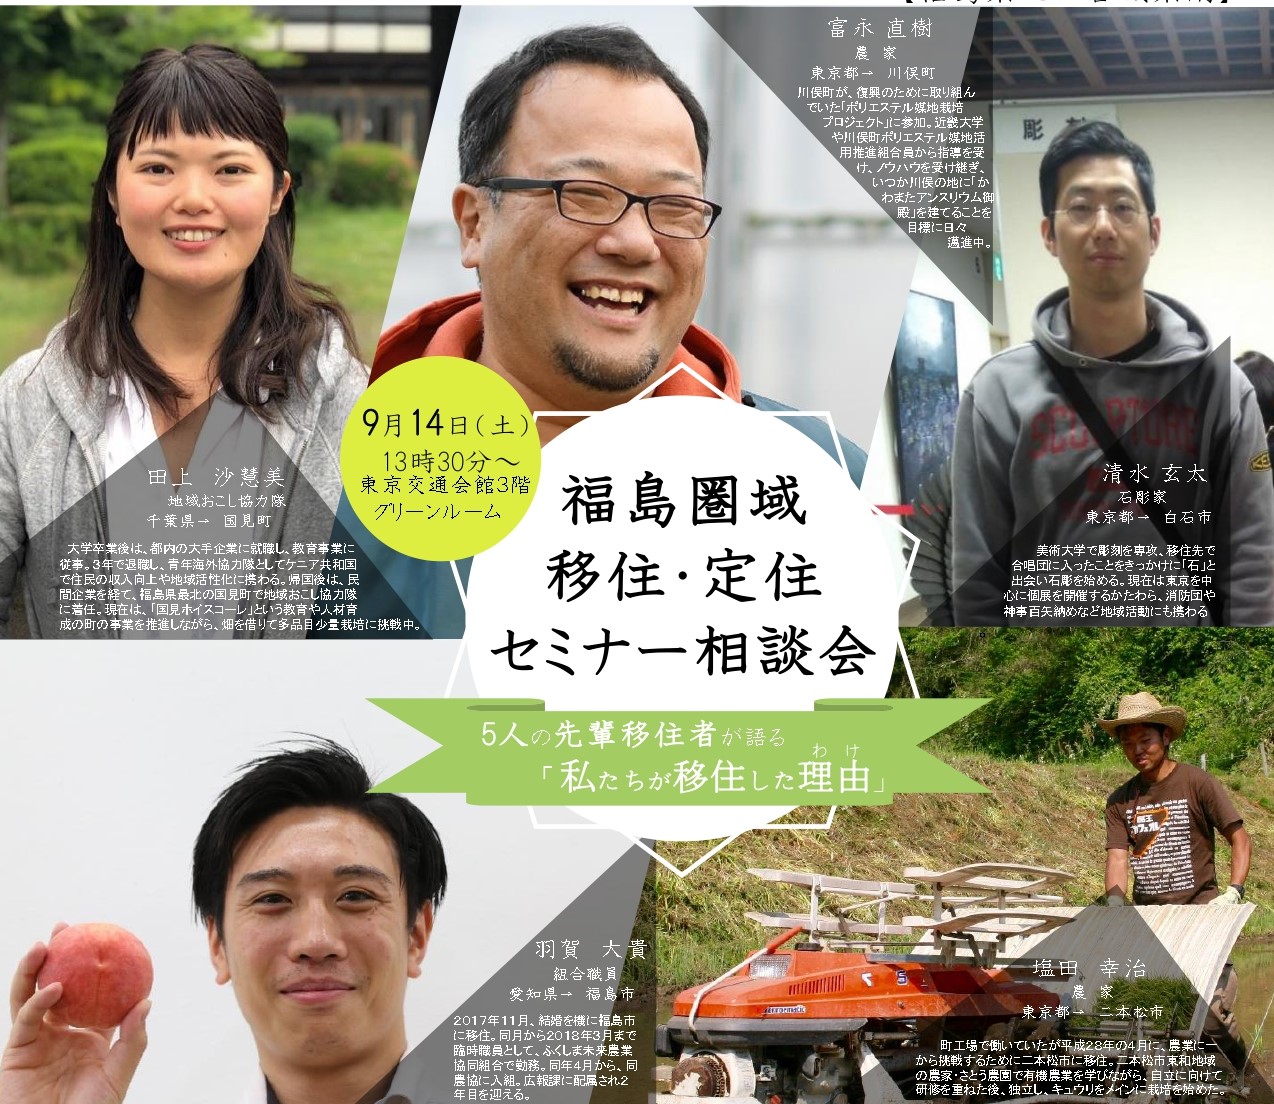 福島圏域移住・定住セミナー相談会　5人の先輩移住者が語る「私たちが移住した理由」 | 移住関連イベント情報